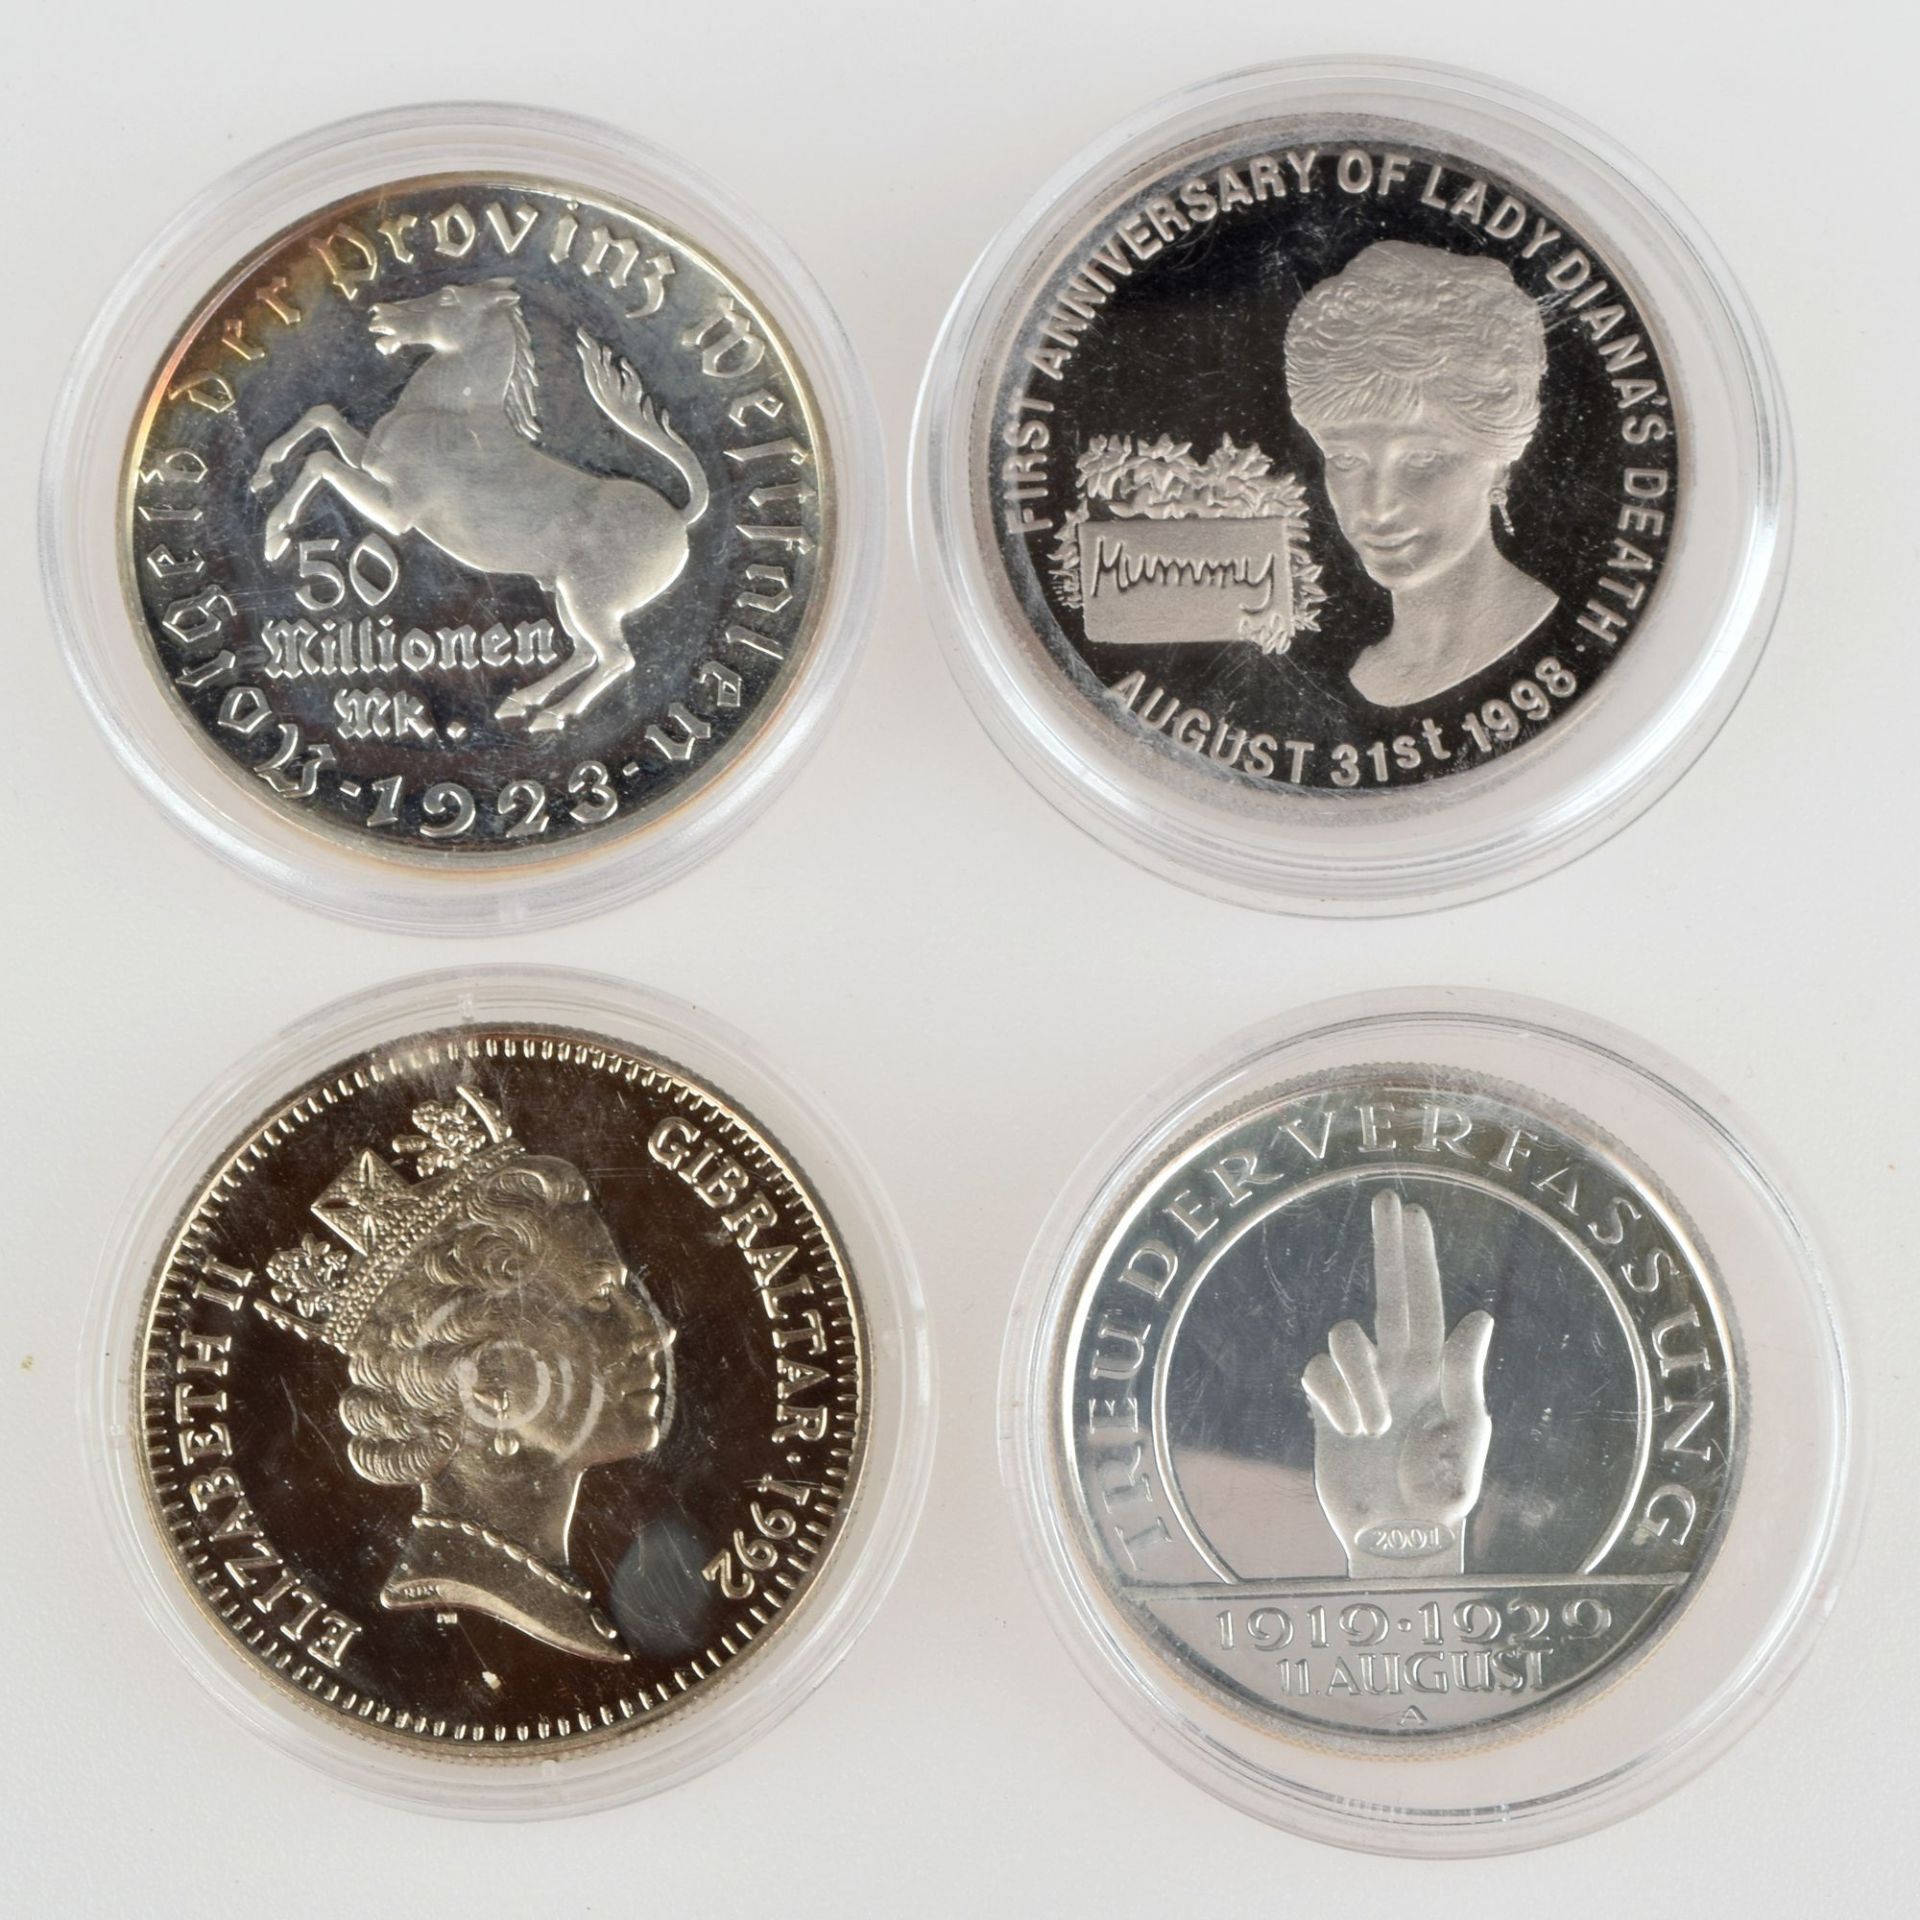 Konvolut Münzen bzw. Gedenkprägungen insg. 4 versch. Ausgaben, 1 x 2 Pfund - 2,8 Ecus Gibraltar - Image 2 of 3